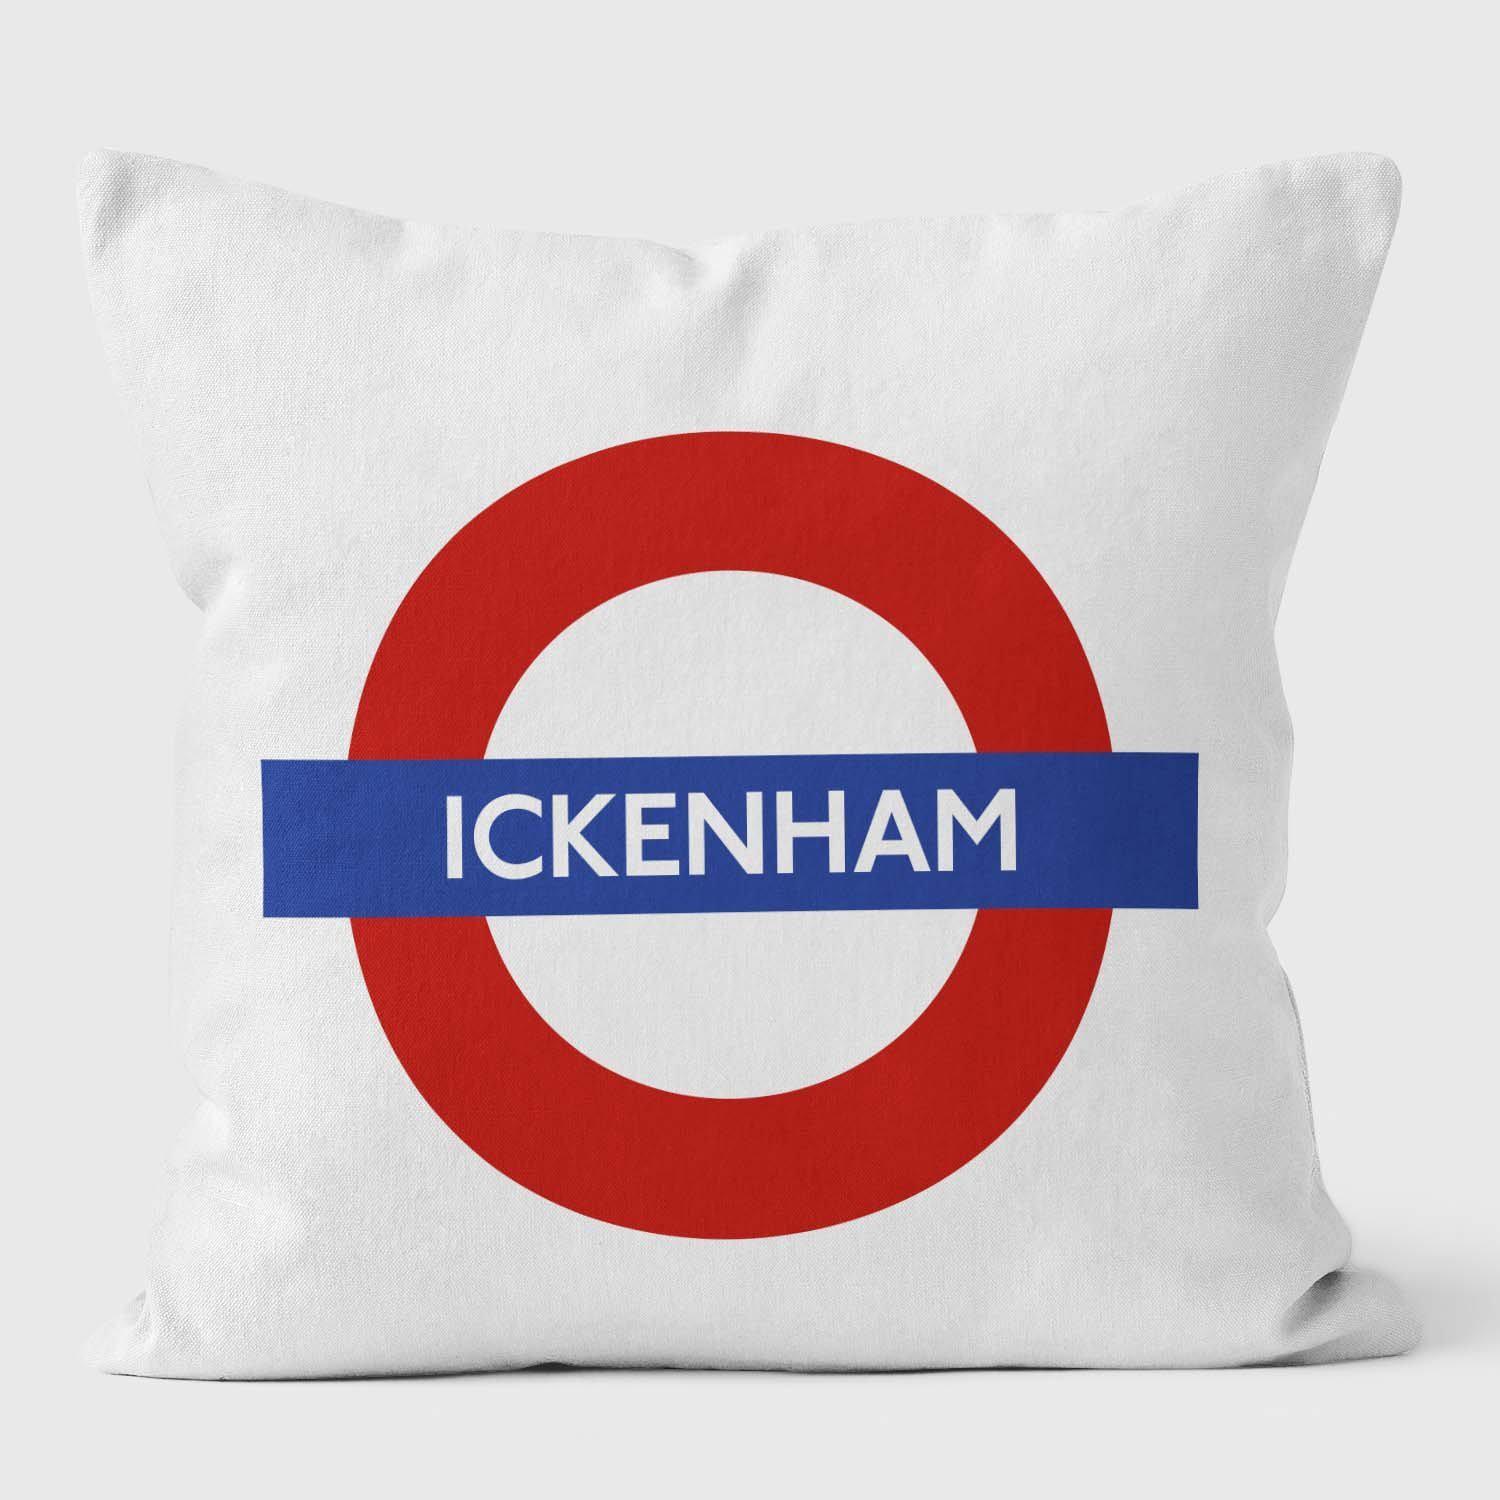 Ickenham London Underground Tube Station Roundel Cushion - Handmade Cushions UK - WeLoveCushions